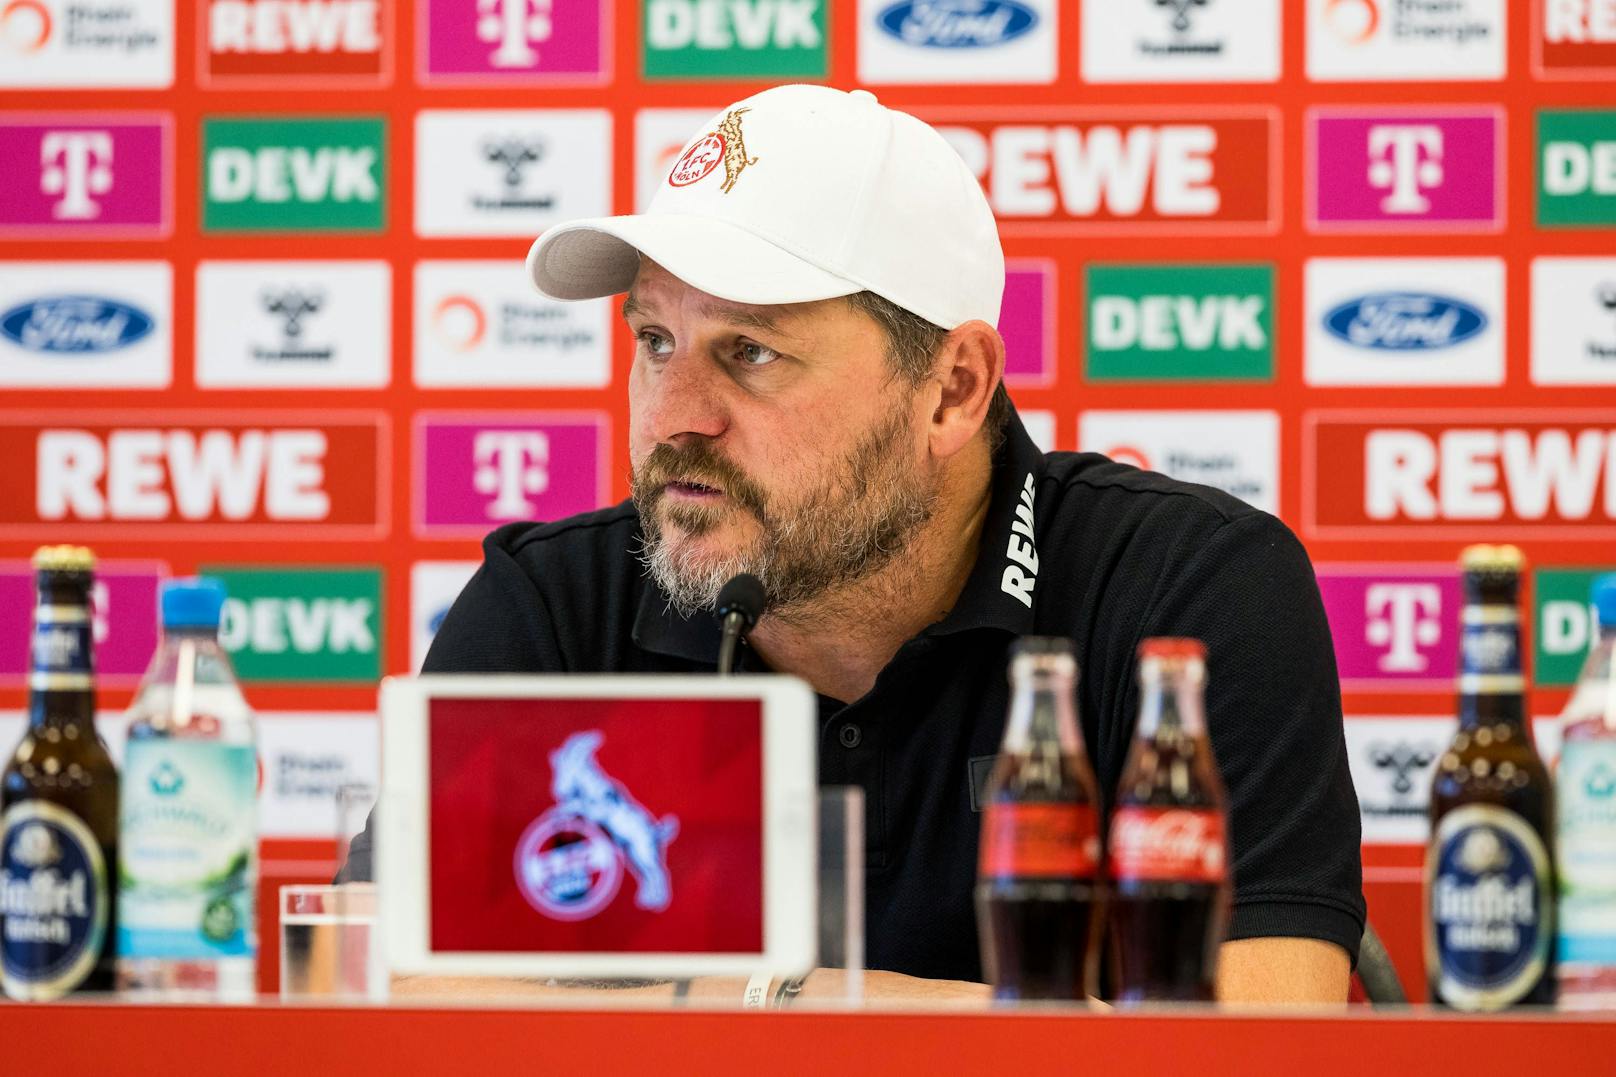 Medienrunde mit Köln-Coach plötzlich abgebrochen